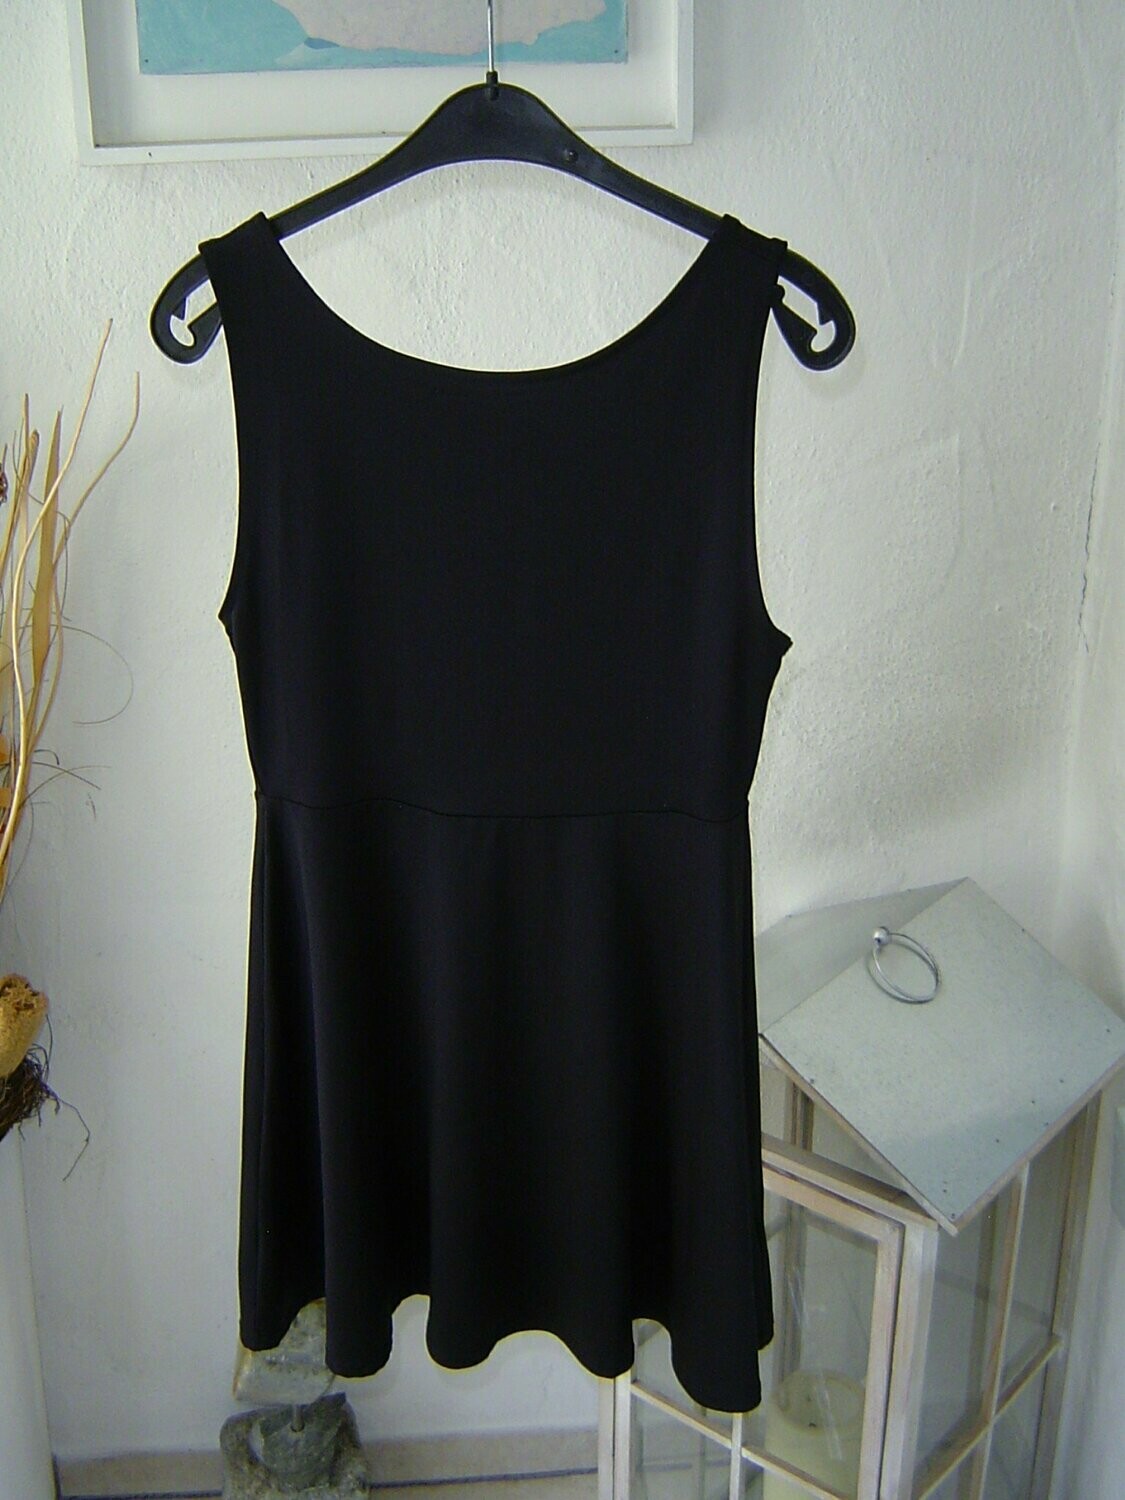 H&M DIVIDED Mädchen Kleid Gr. 158, 164 armlos schwarz länge 82cm tiefer  Rücken stretch